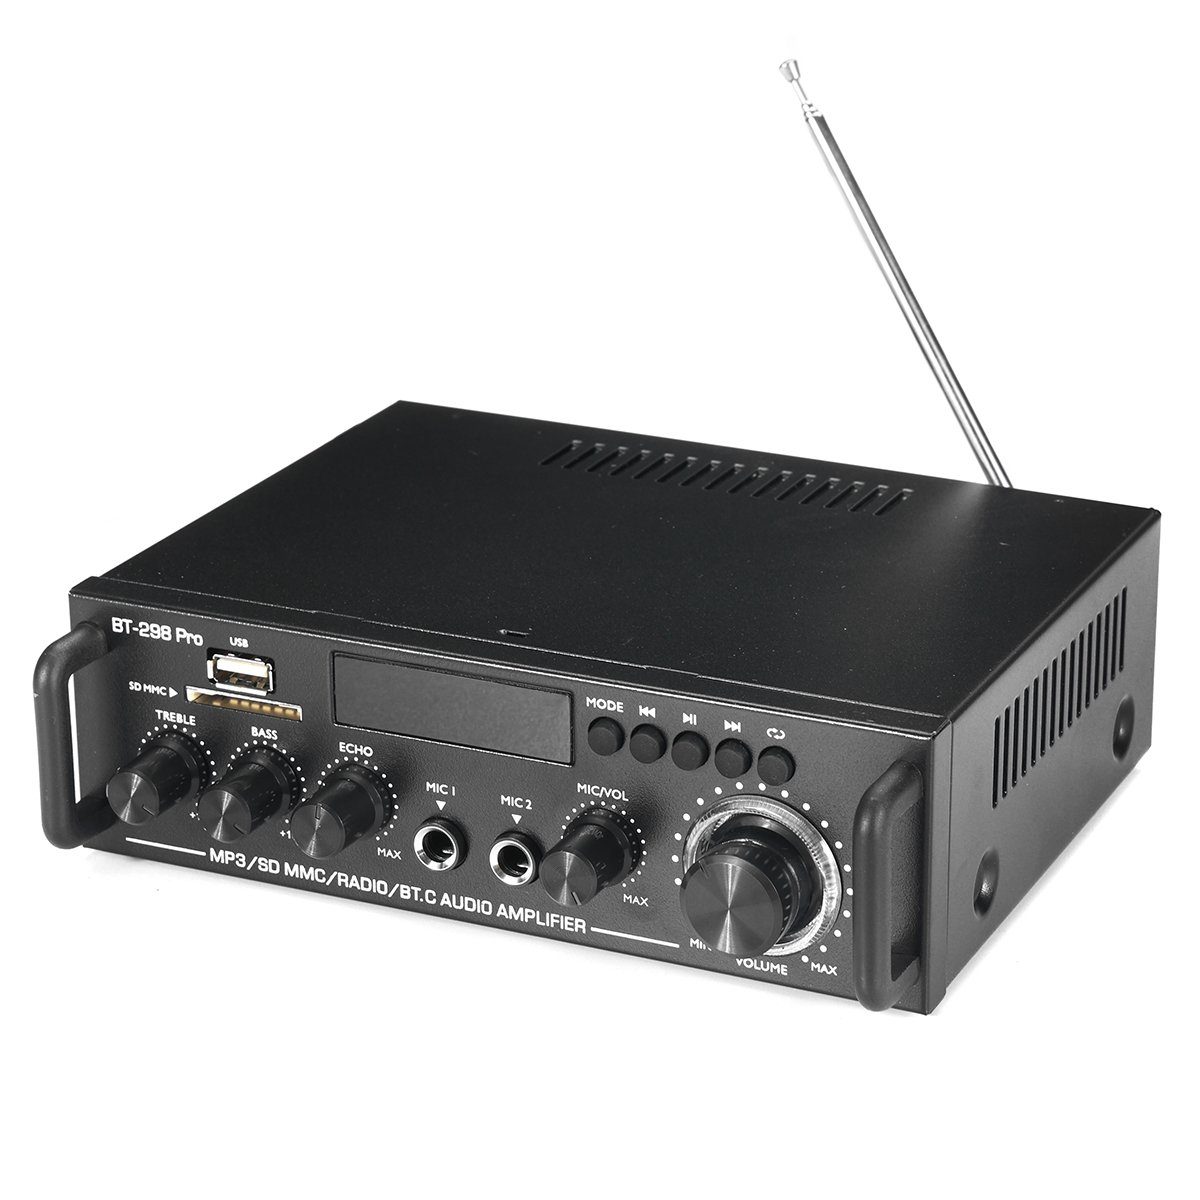 Insma Audioverstärker Amplifier) 800W Verstärker HiFi Stereo Audio bluetooth Digital (2-Kanal